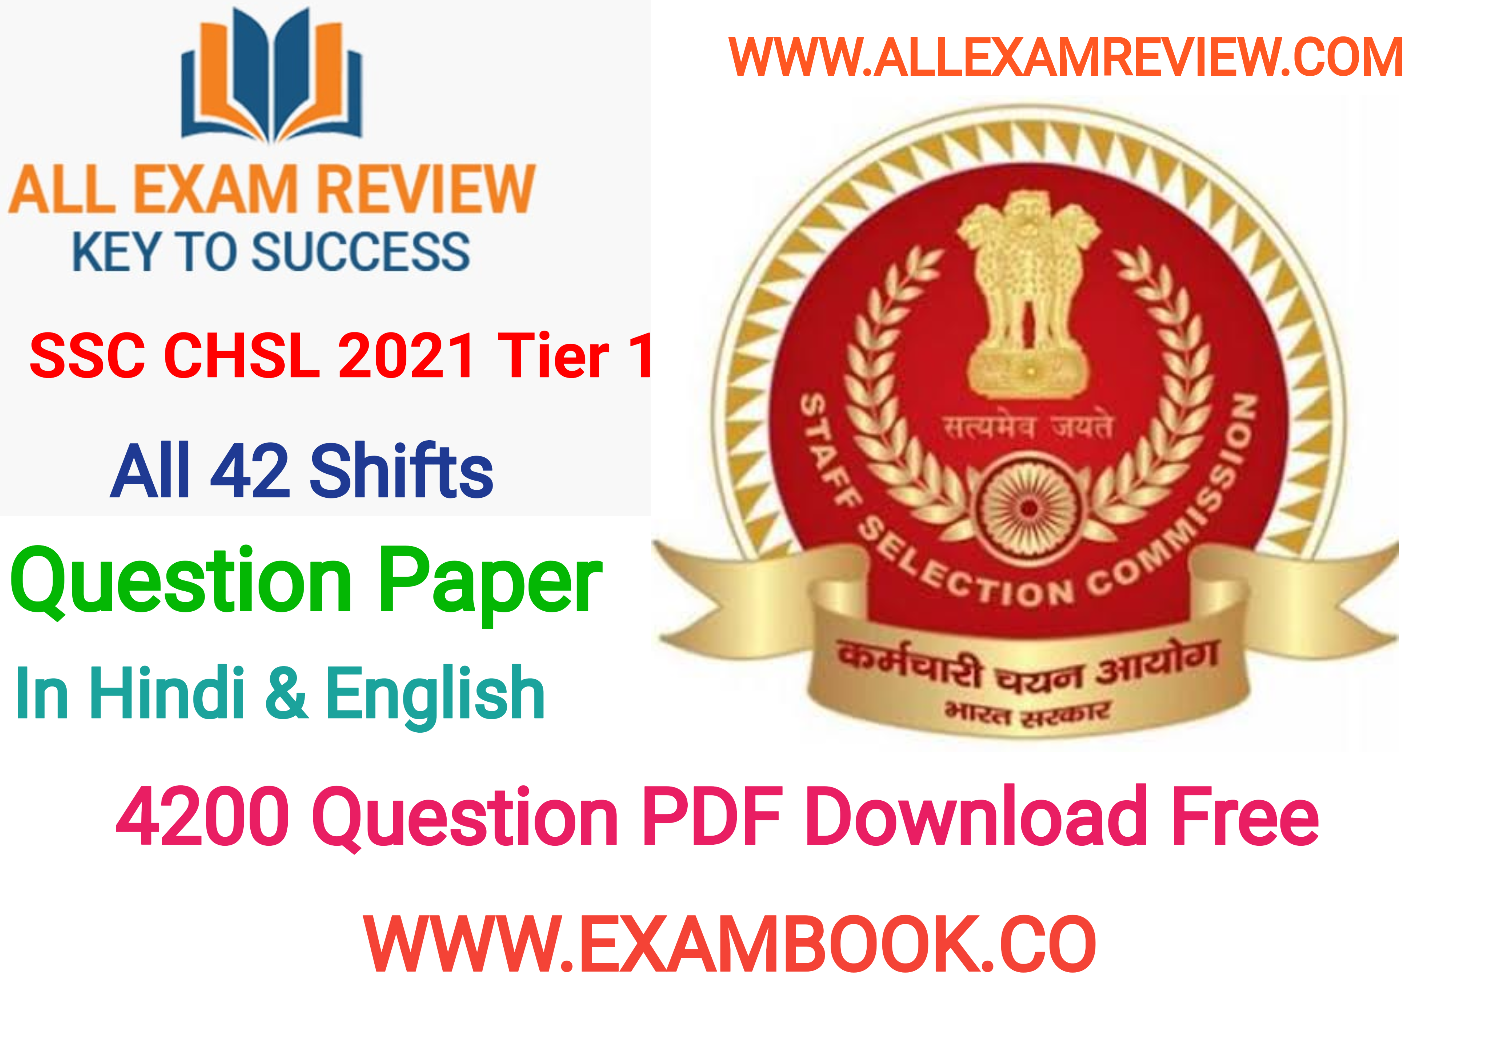 SSC CHSL 2021 Tier 1 Question Paper 2022